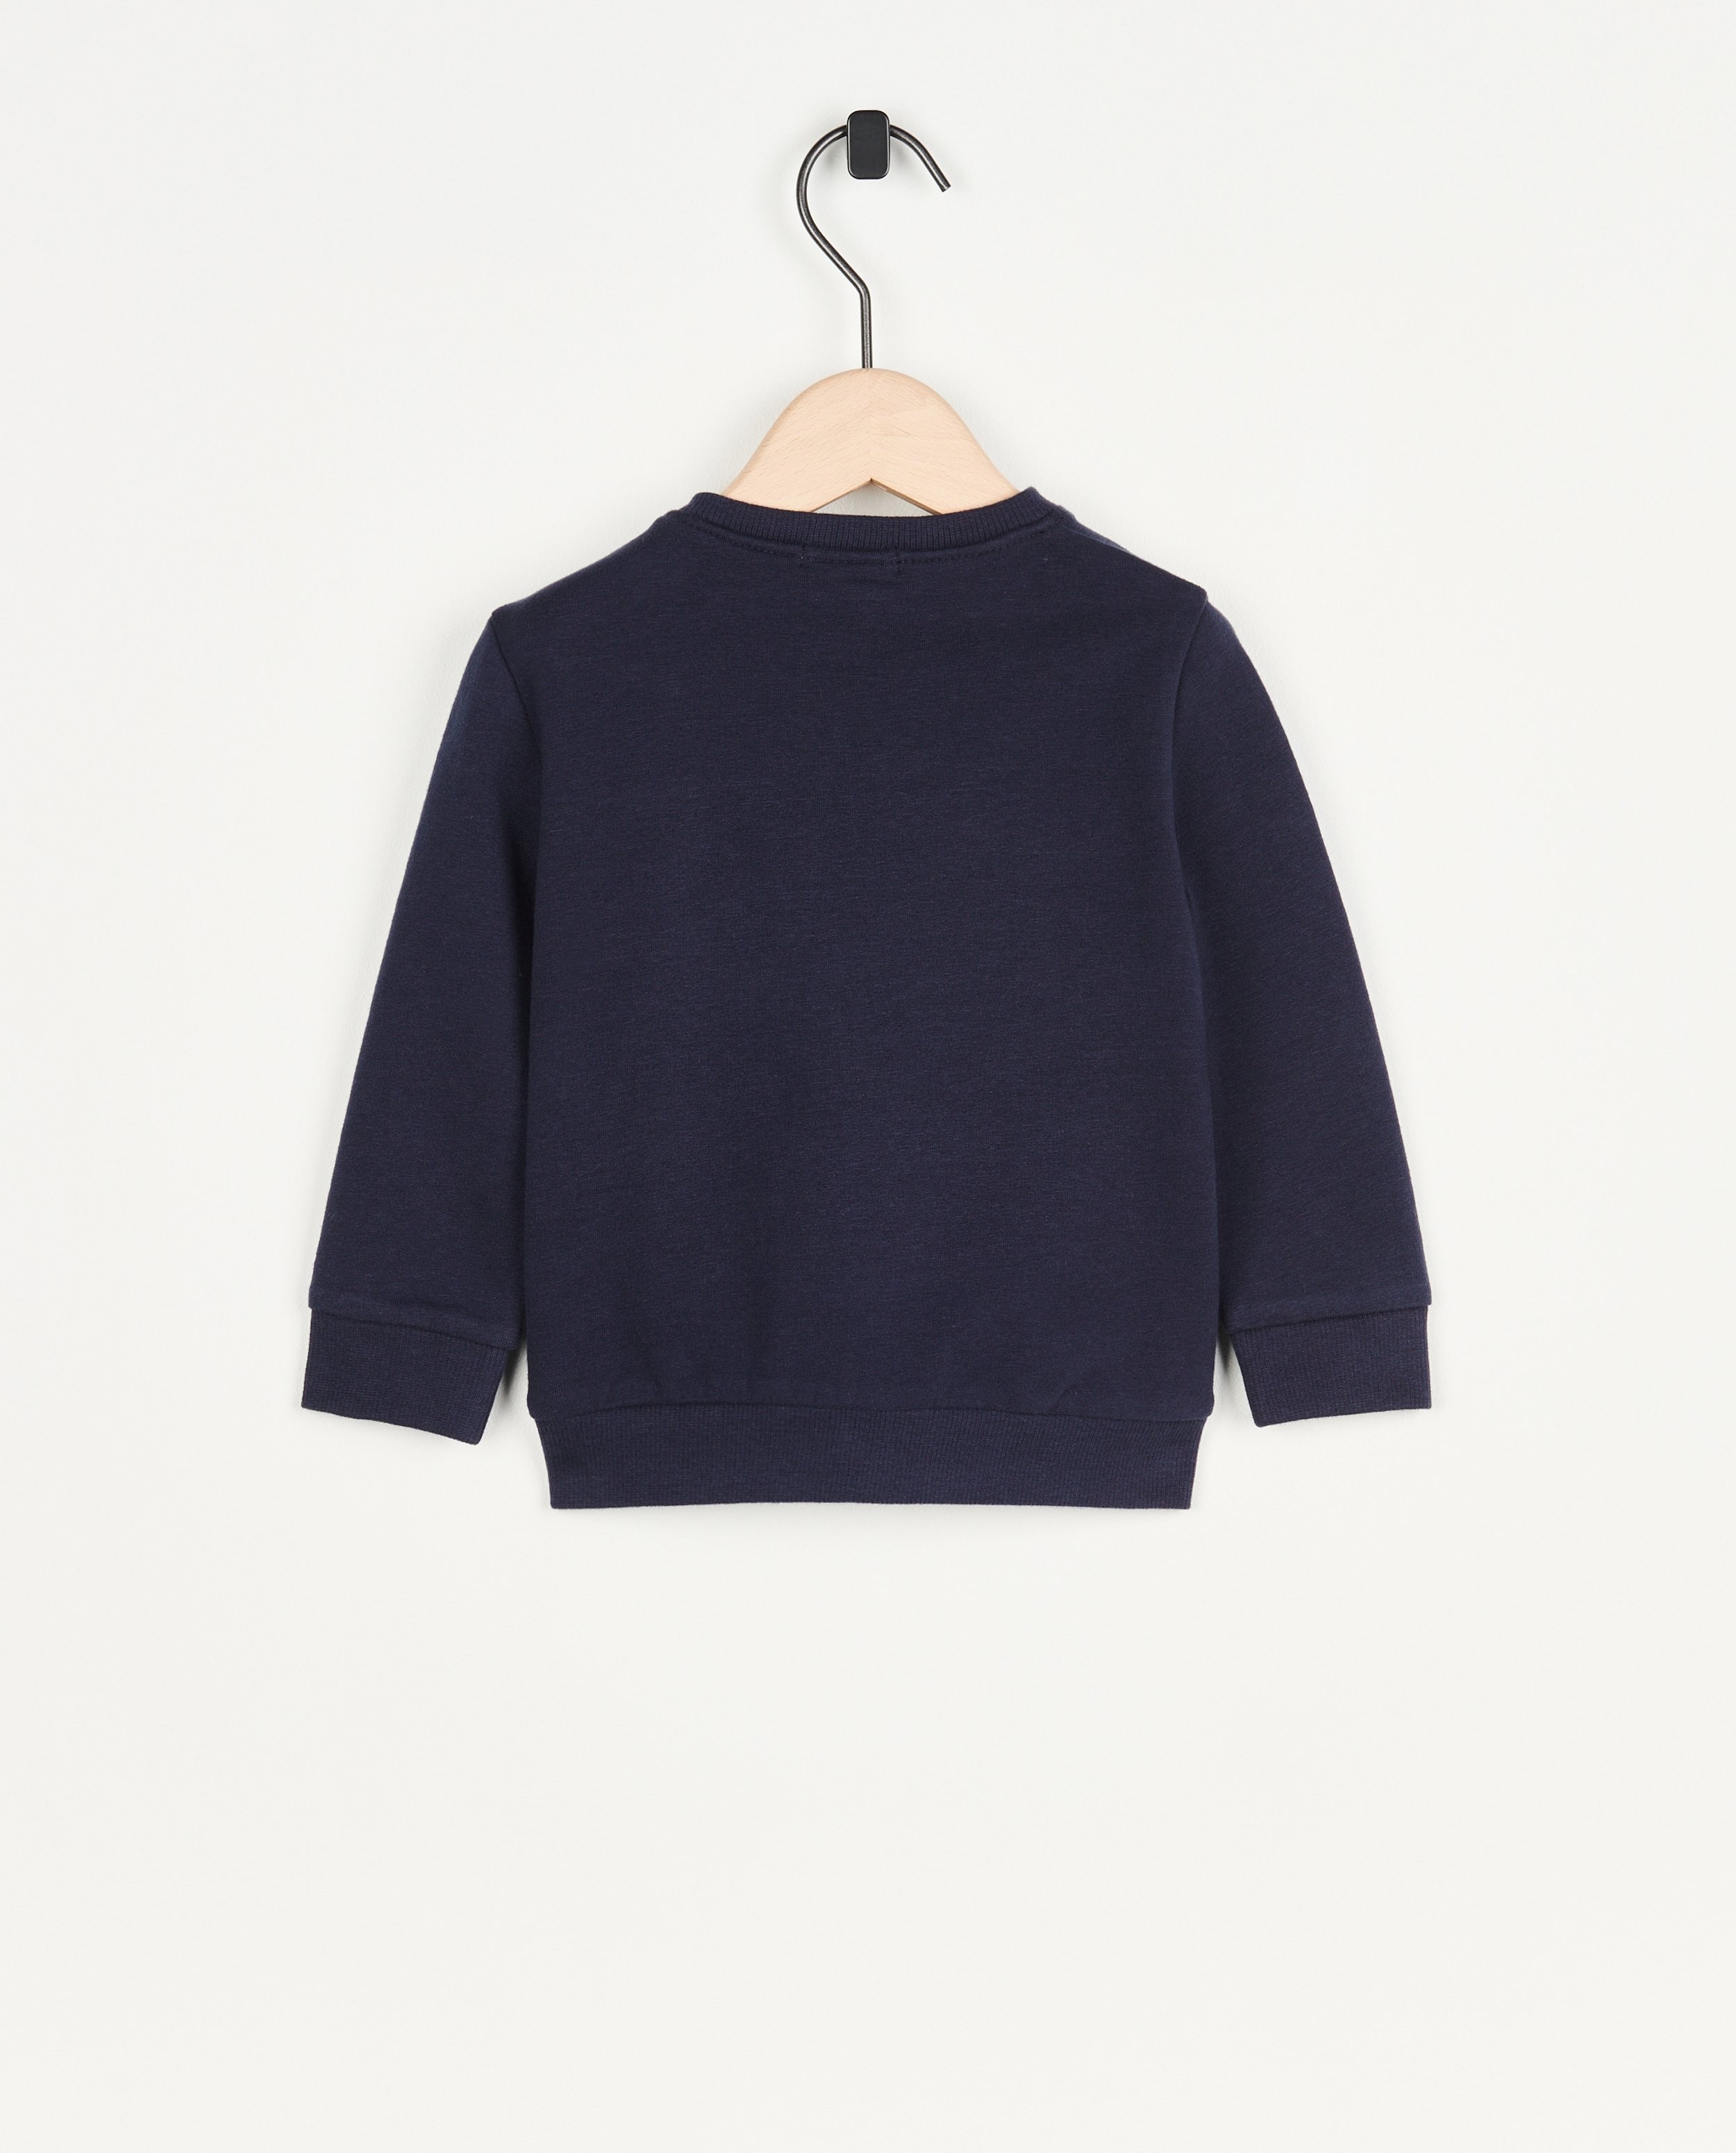 Sweaters - Blauwe sweater met opschrift (NL)